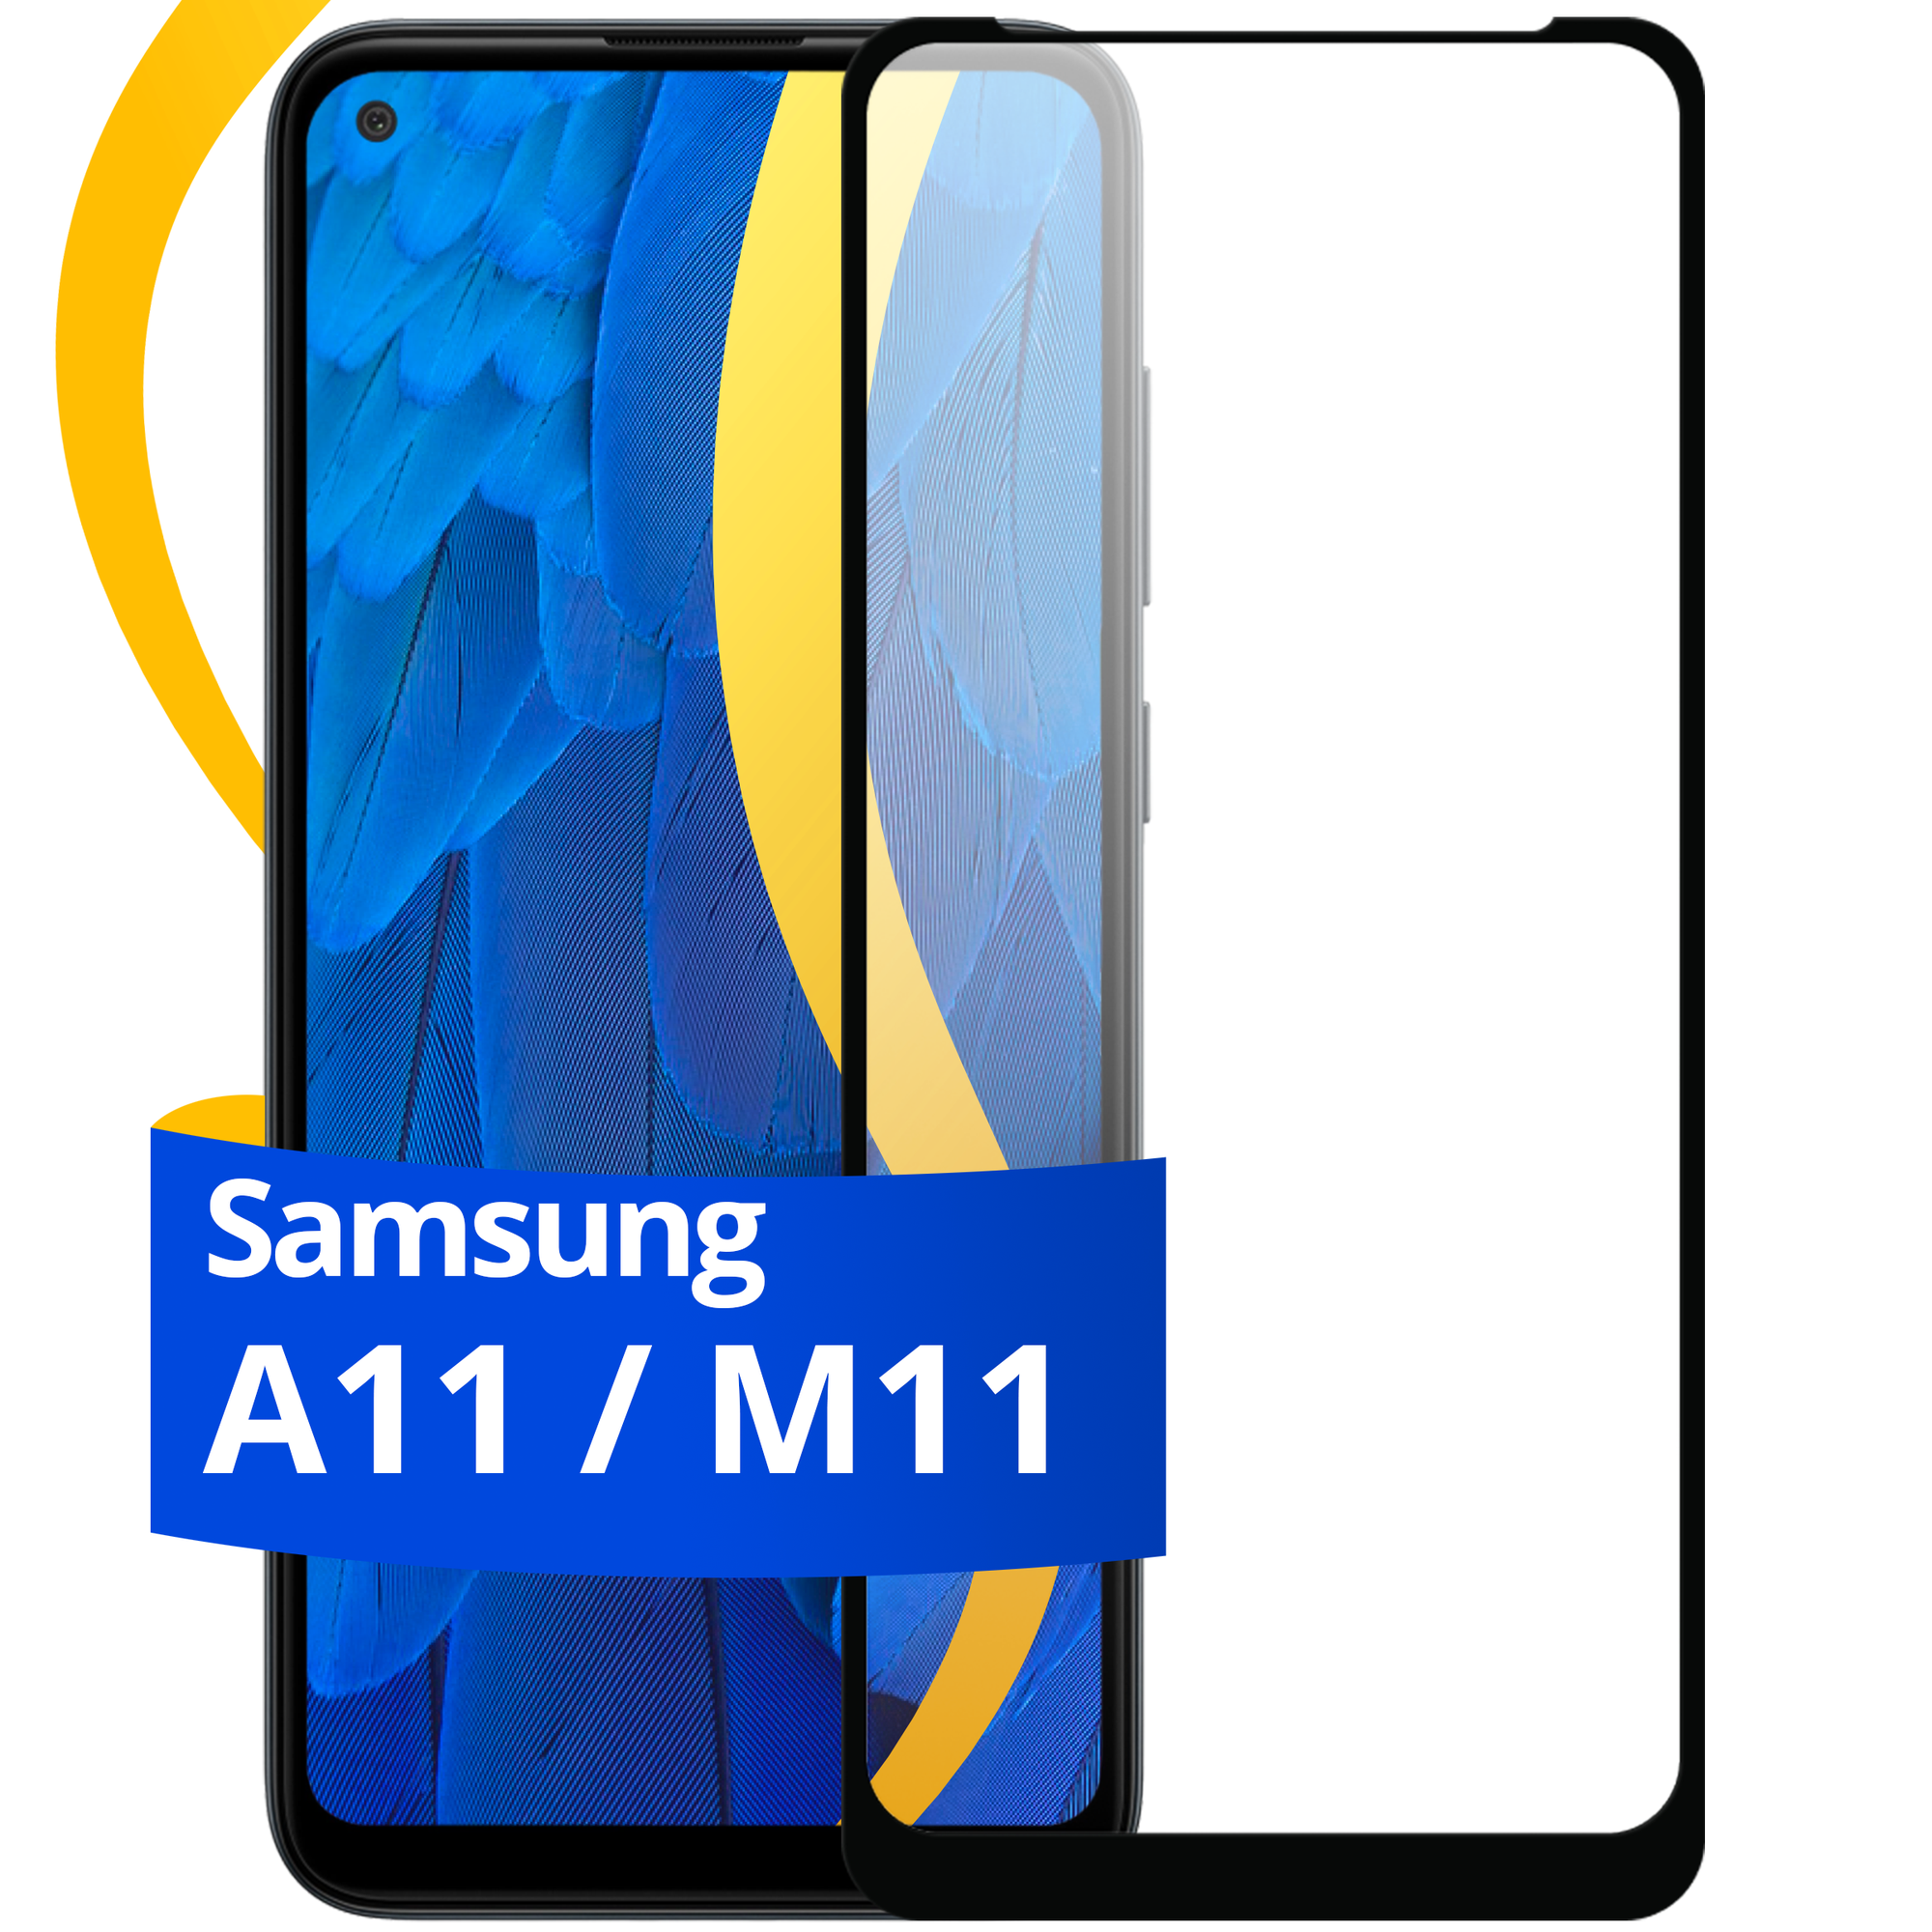 Глянцевое защитное стекло для телефона Samsung Galaxy A11 и M11 / Противоударное стекло с олеофобным покрытием на смартфон Самсунг Галакси А11 и М11